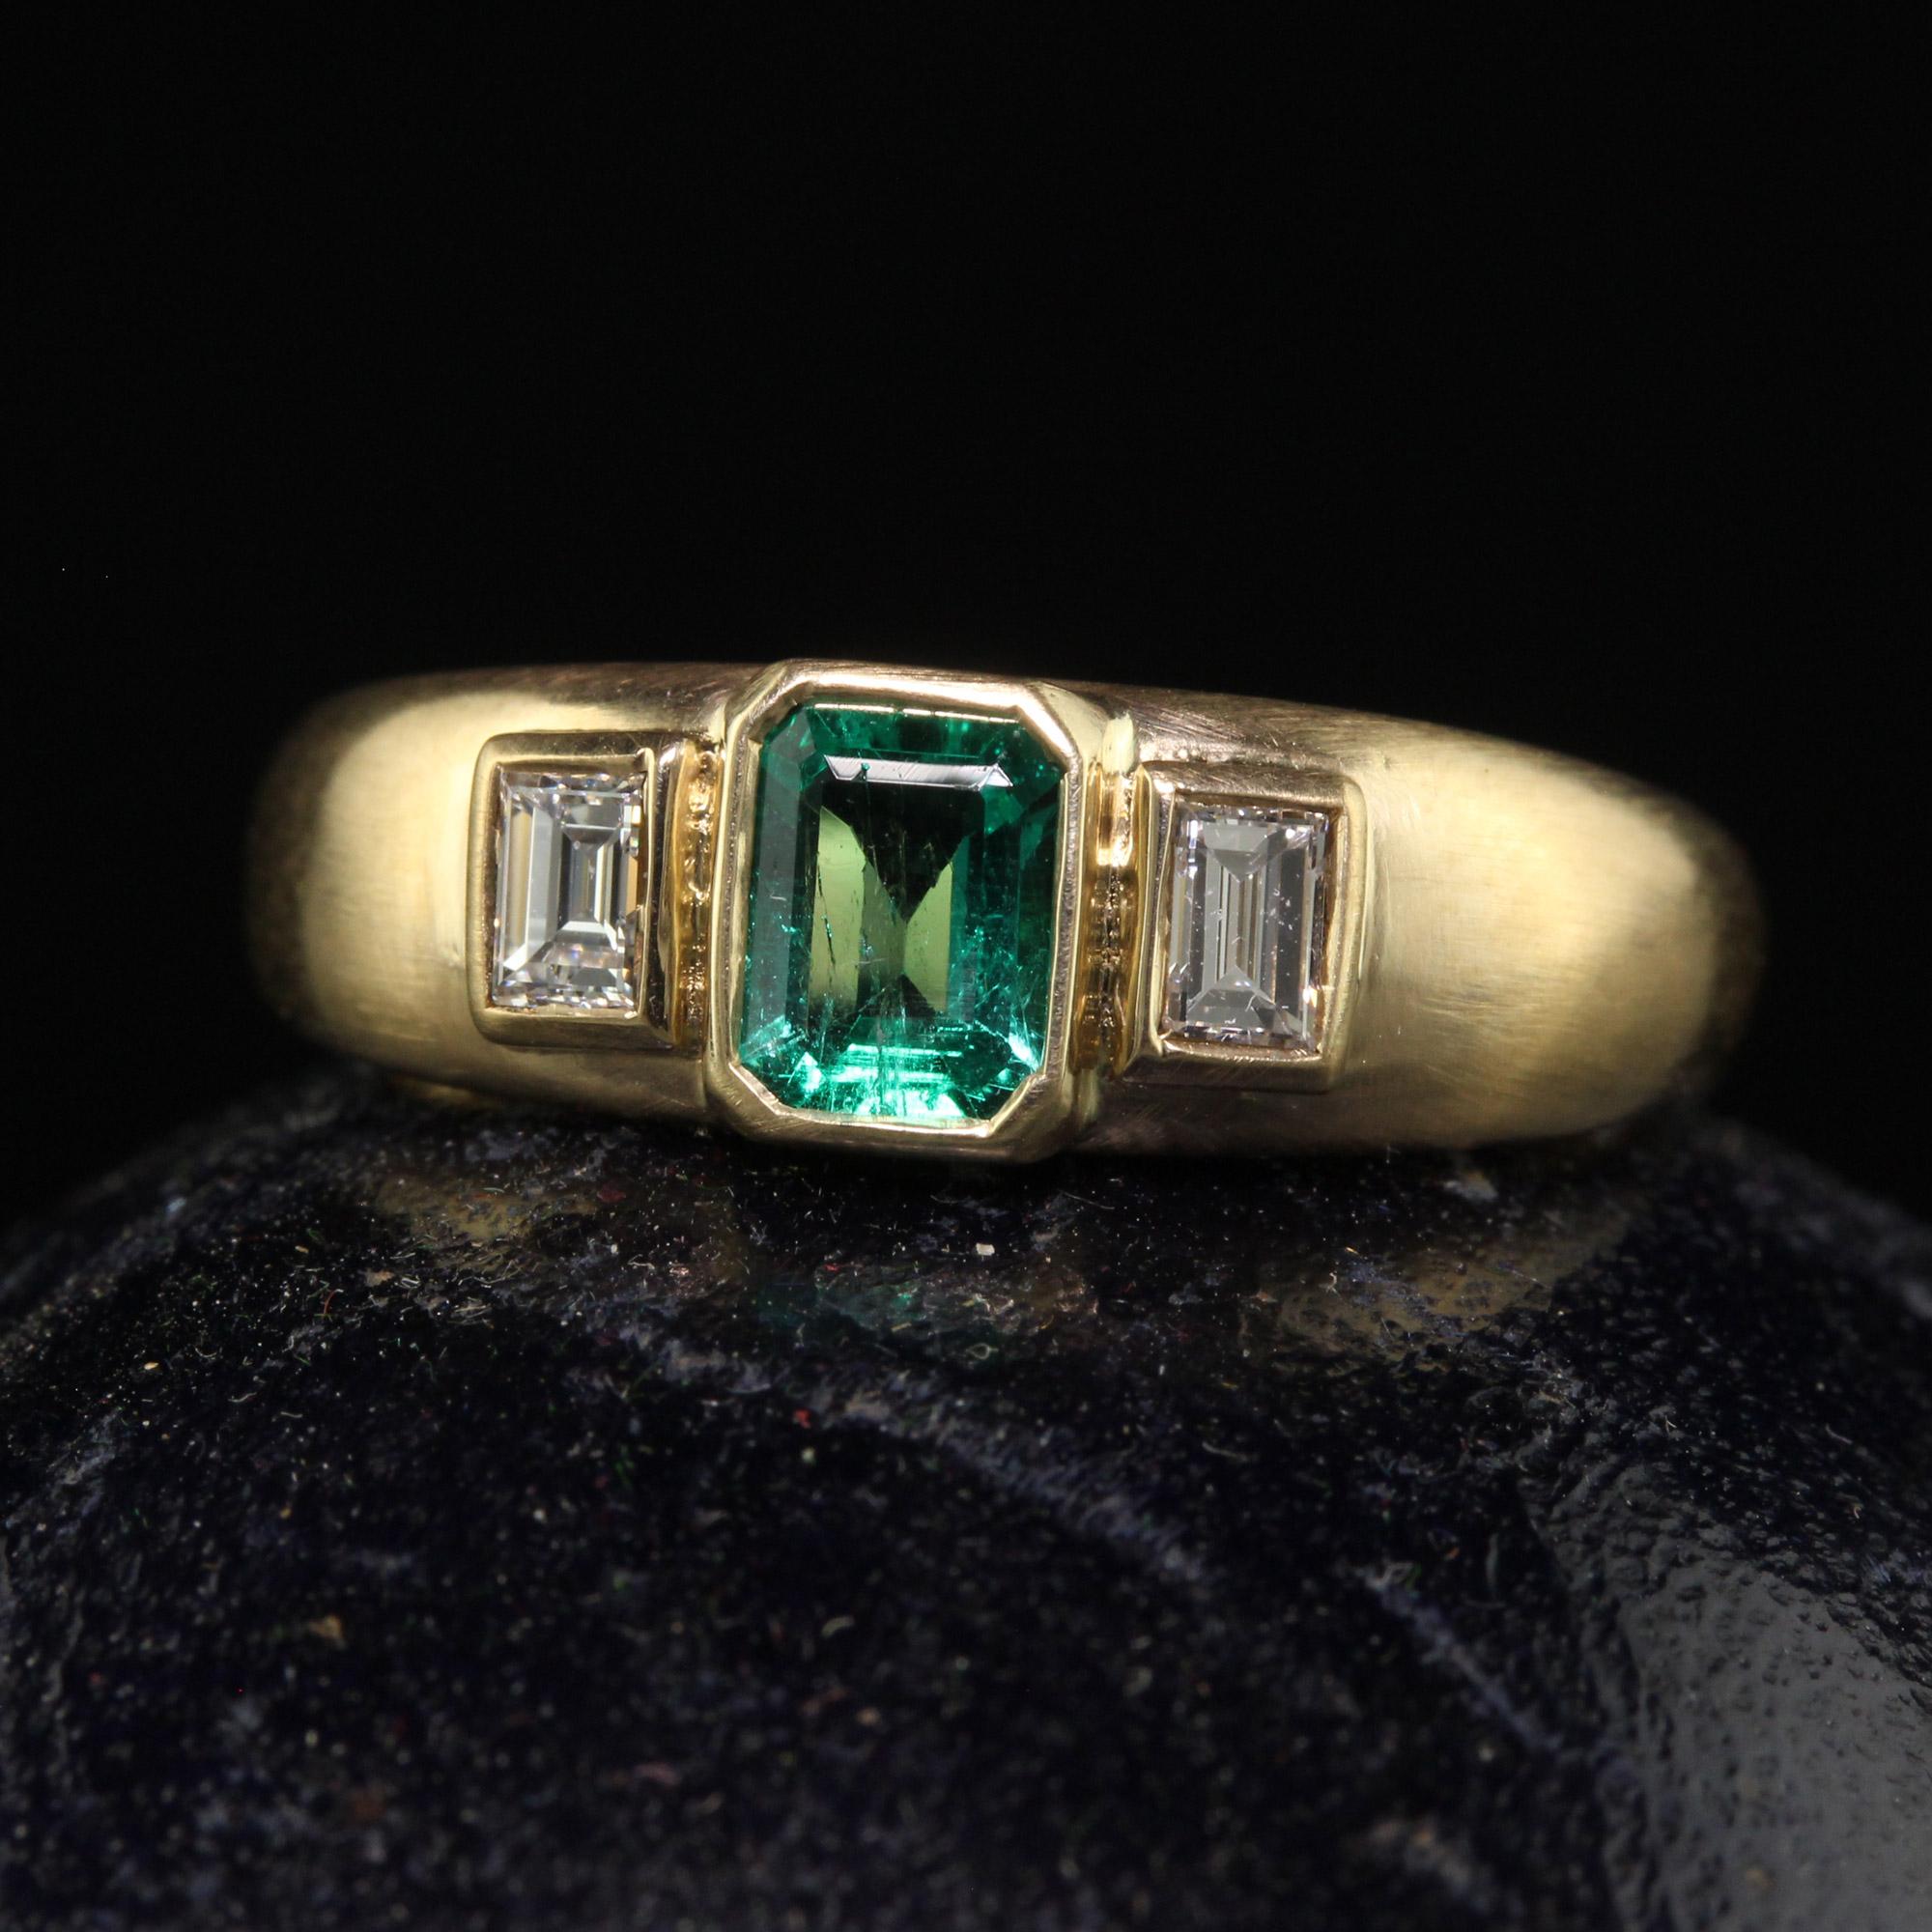 Schöne Vintage Retro Französisch 18K Gelbgold kolumbianischen Smaragd Diamant Drei Stein Ring. Dieser wunderschöne französische Retro-Ring mit drei Steinen ist aus 18 Karat Gelbgold gefertigt. In der Mitte befindet sich ein natürlicher